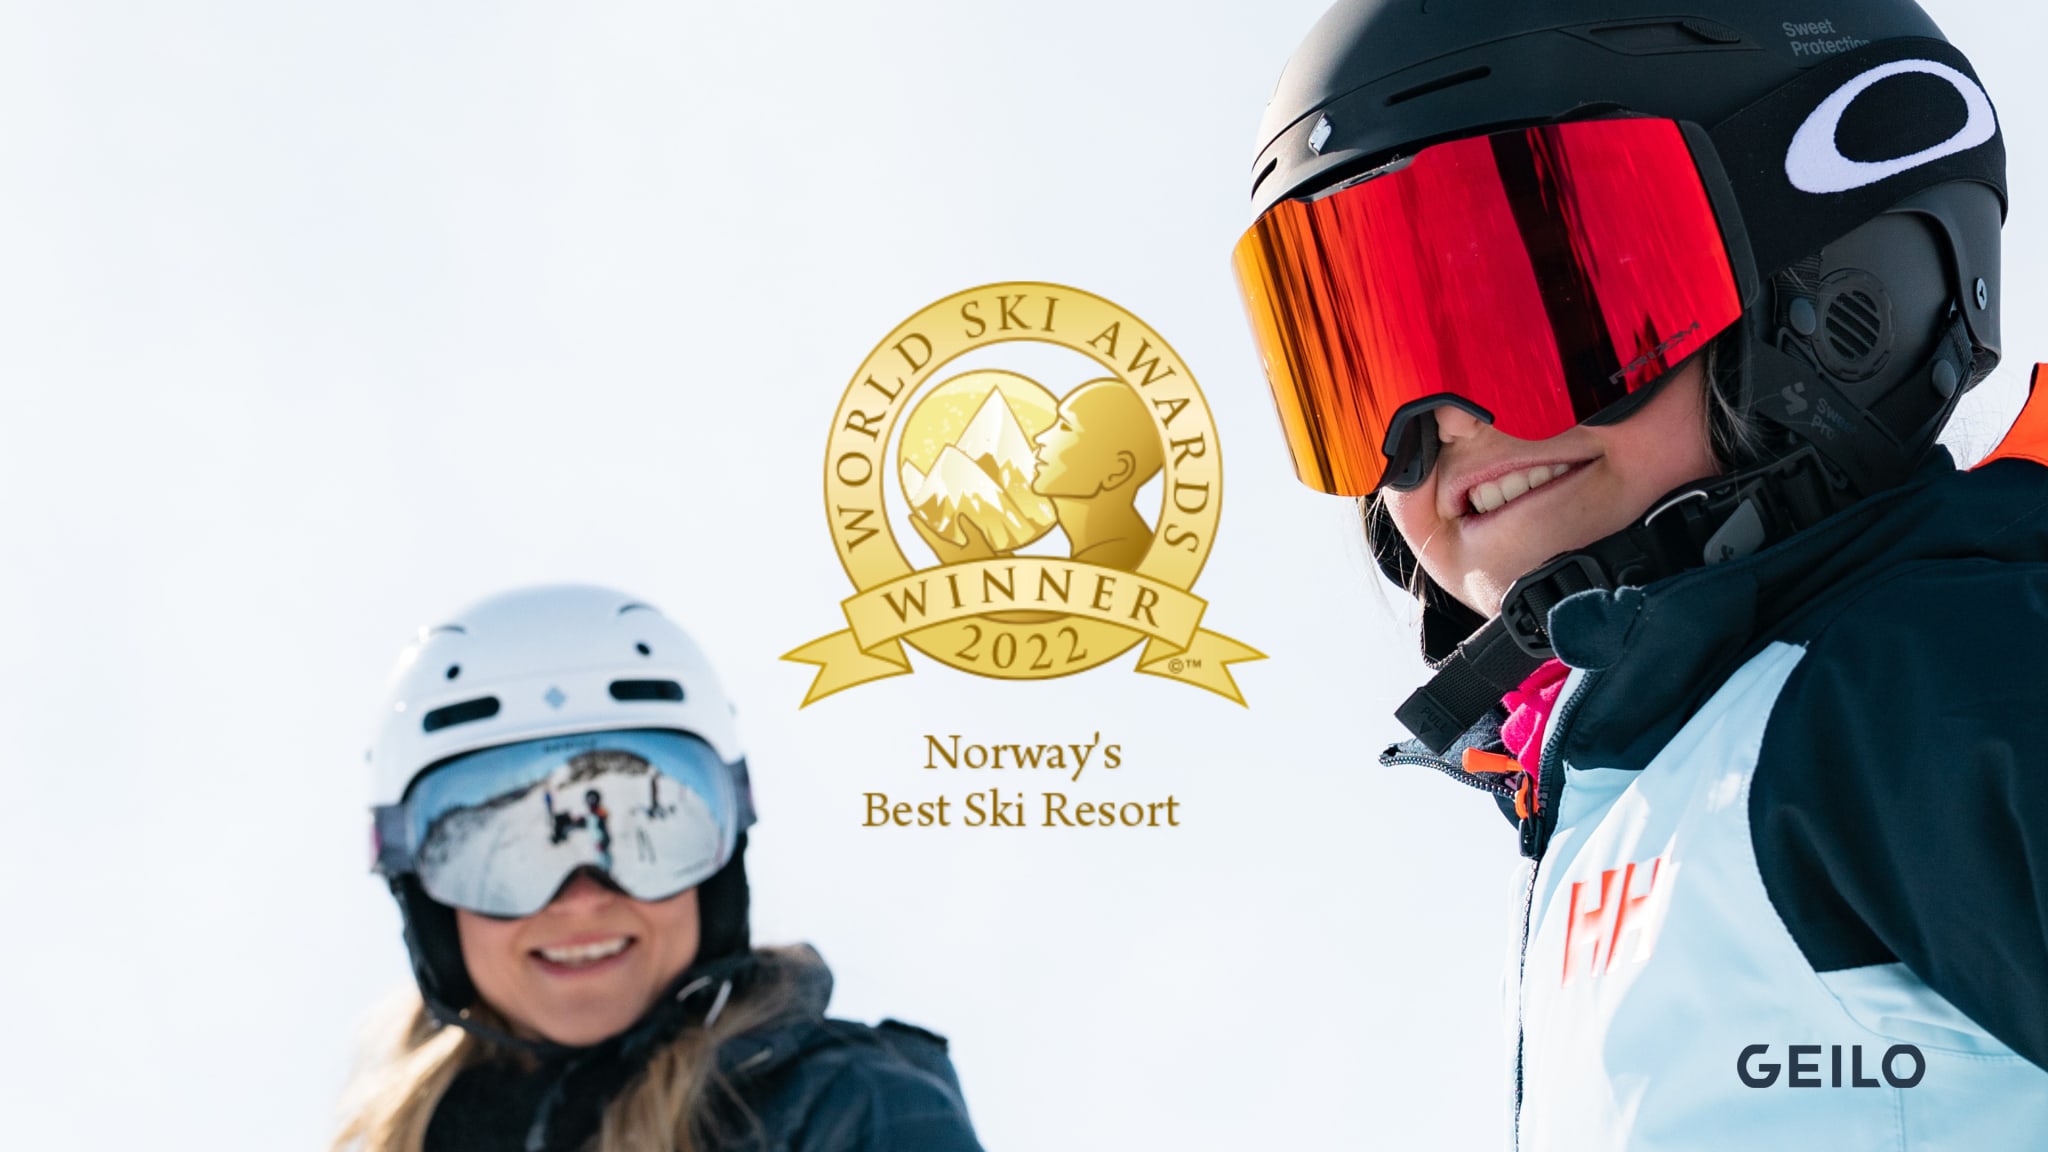 Norway's Best Ski Resort for fjerde året på rad!